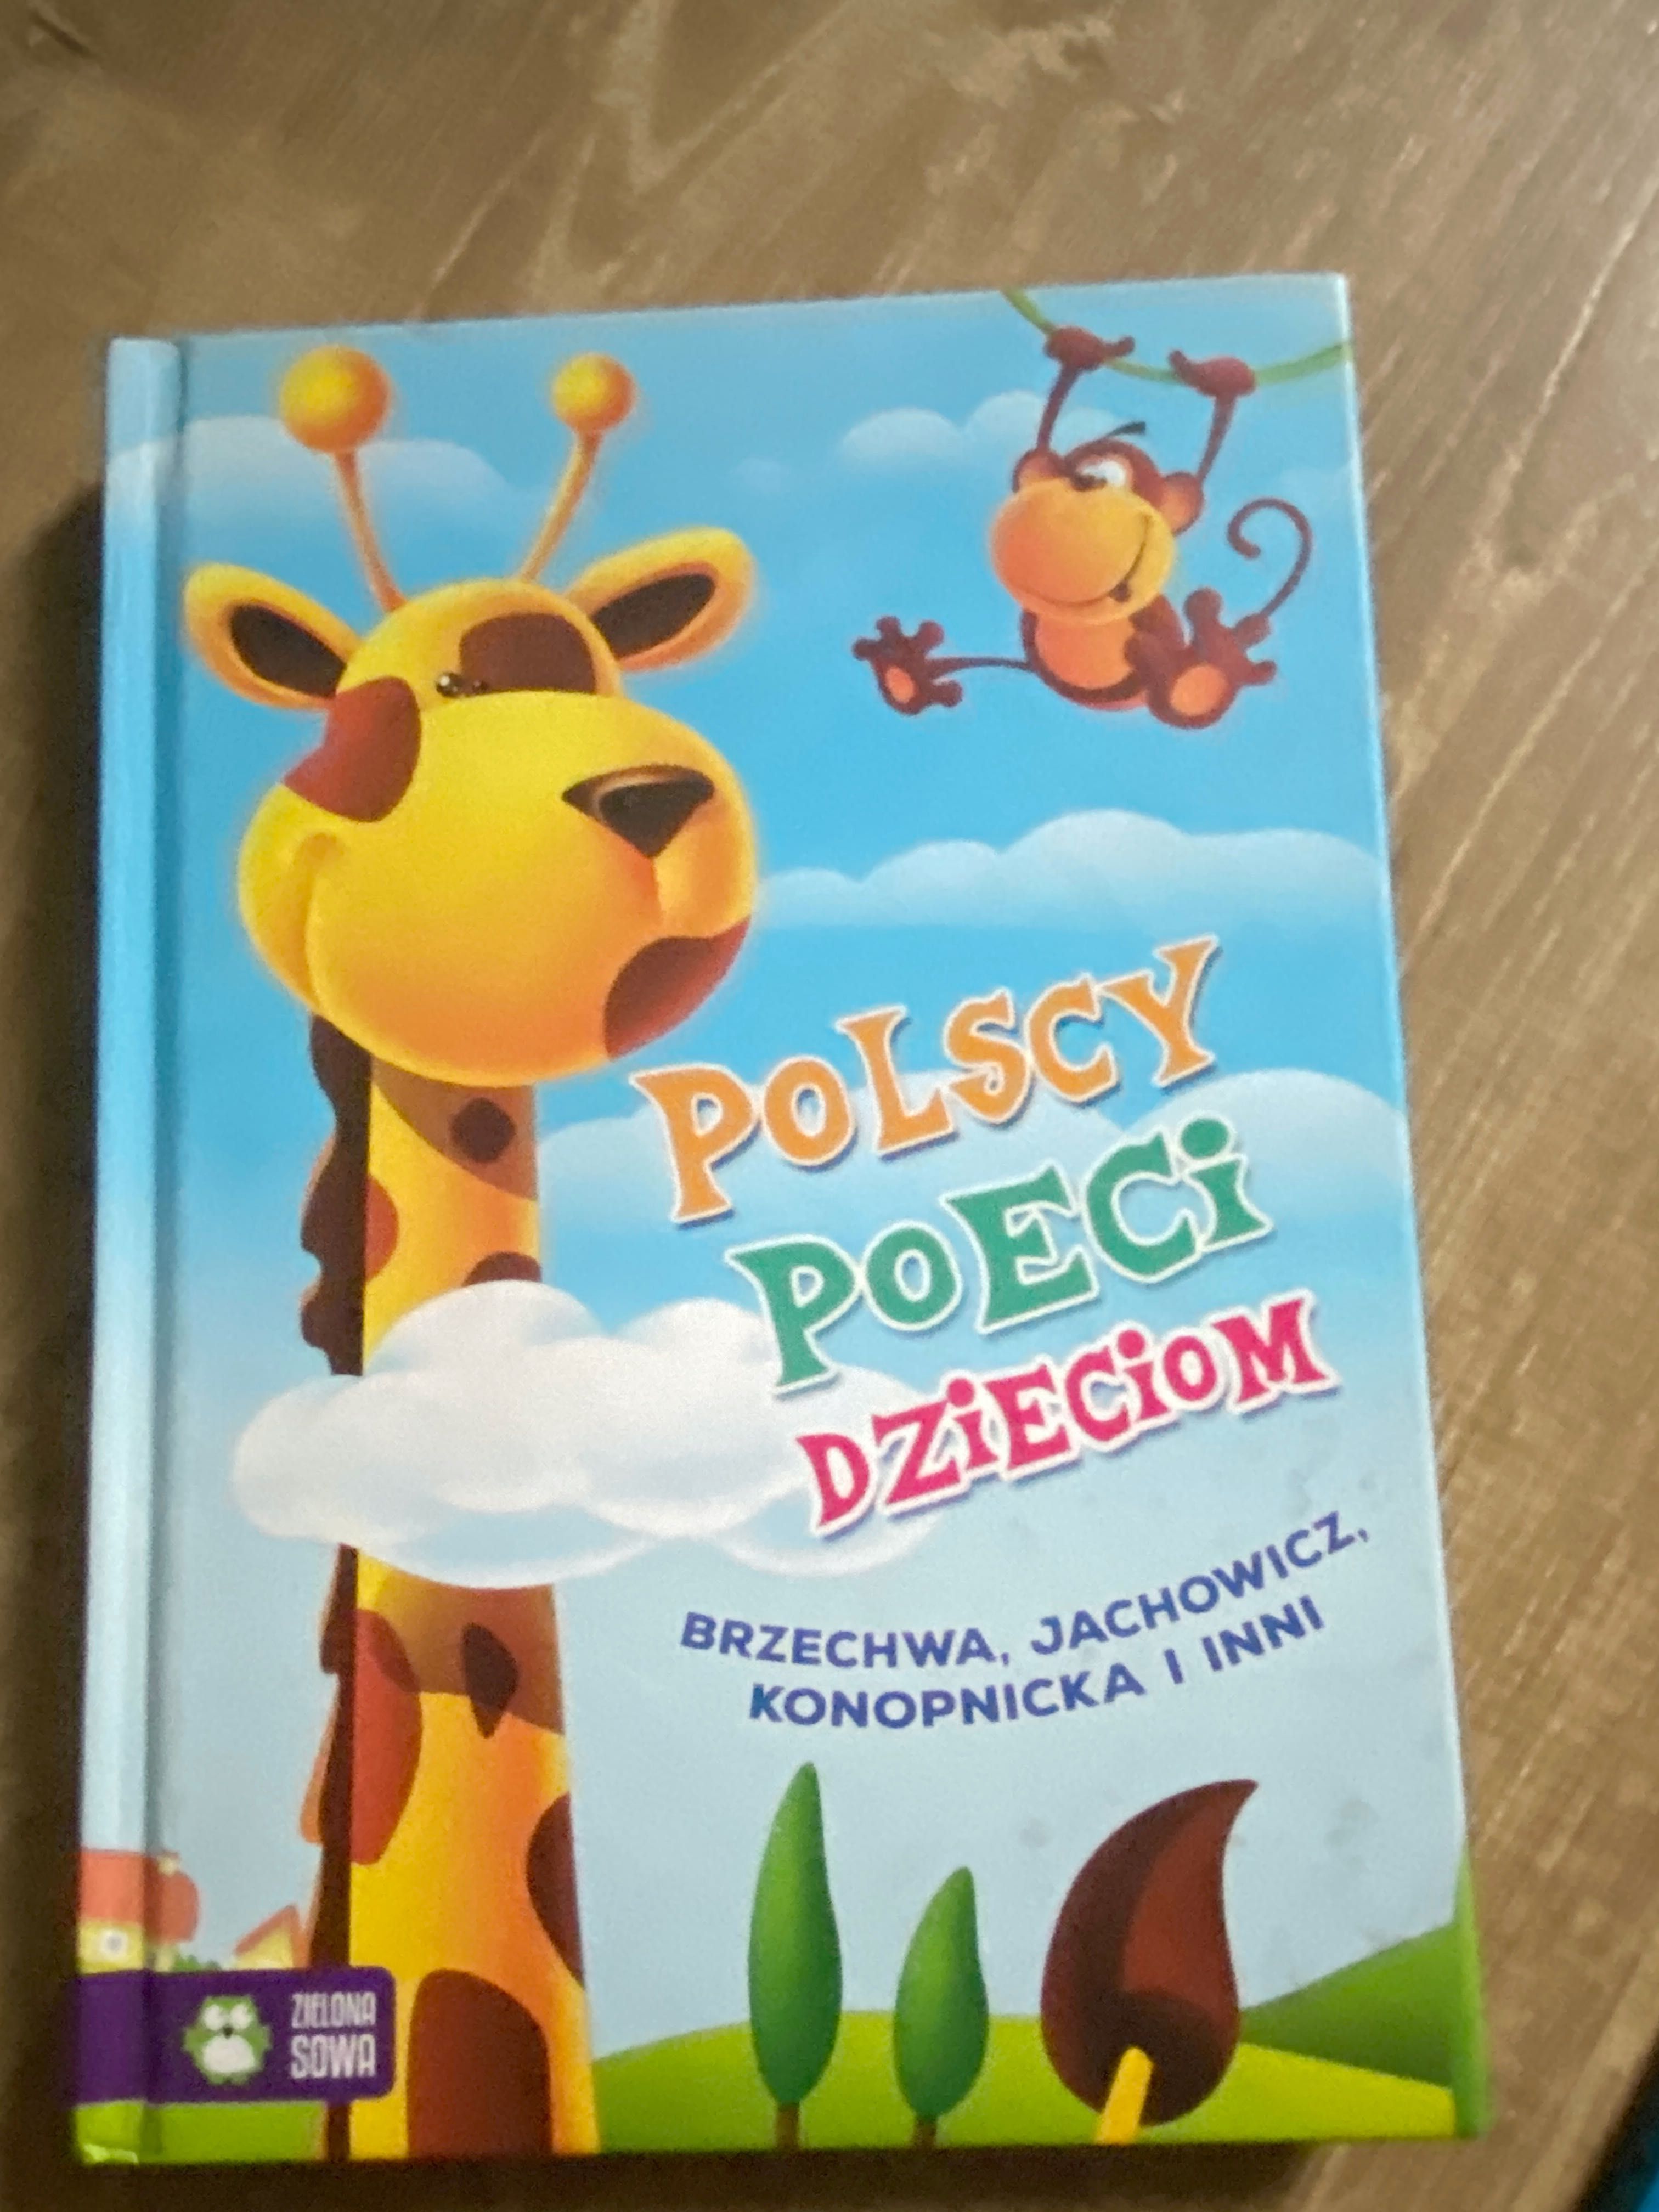 Książka "Polscy poeci dzieciom"